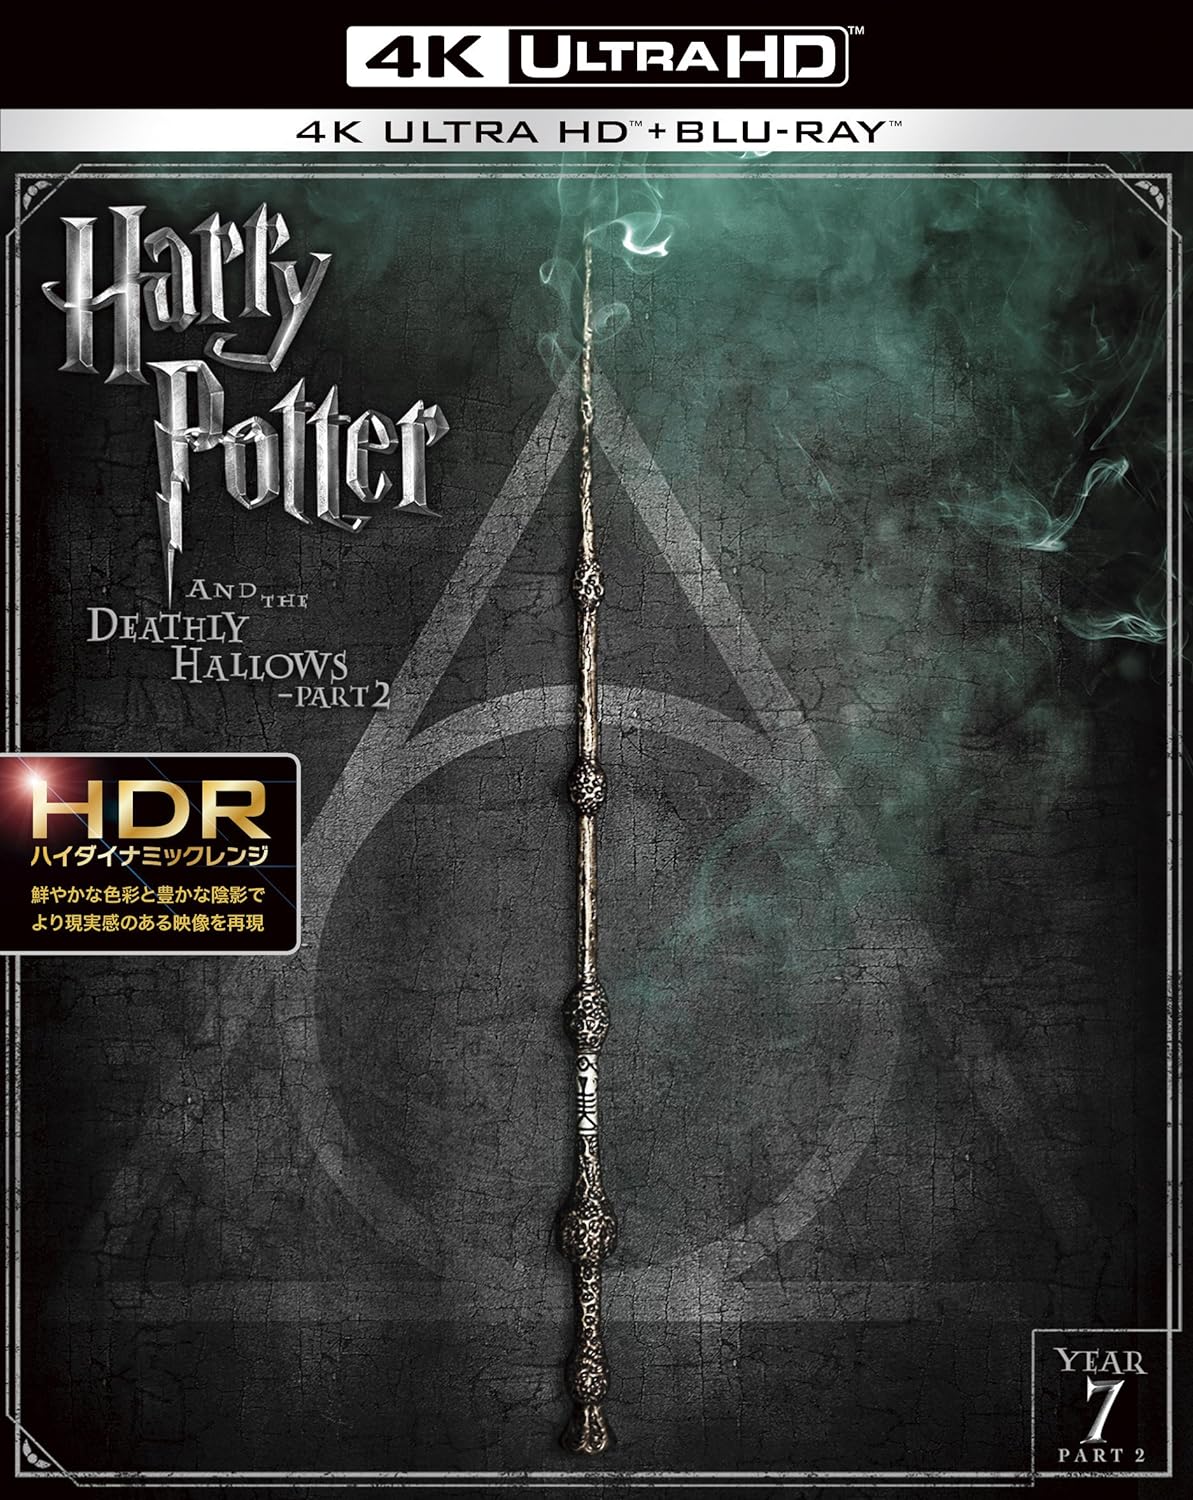 ハリー・ポッターと死の秘宝 PART2<4K ULTRA HD&ブルーレイセット>(3枚組) [Blu-ray]